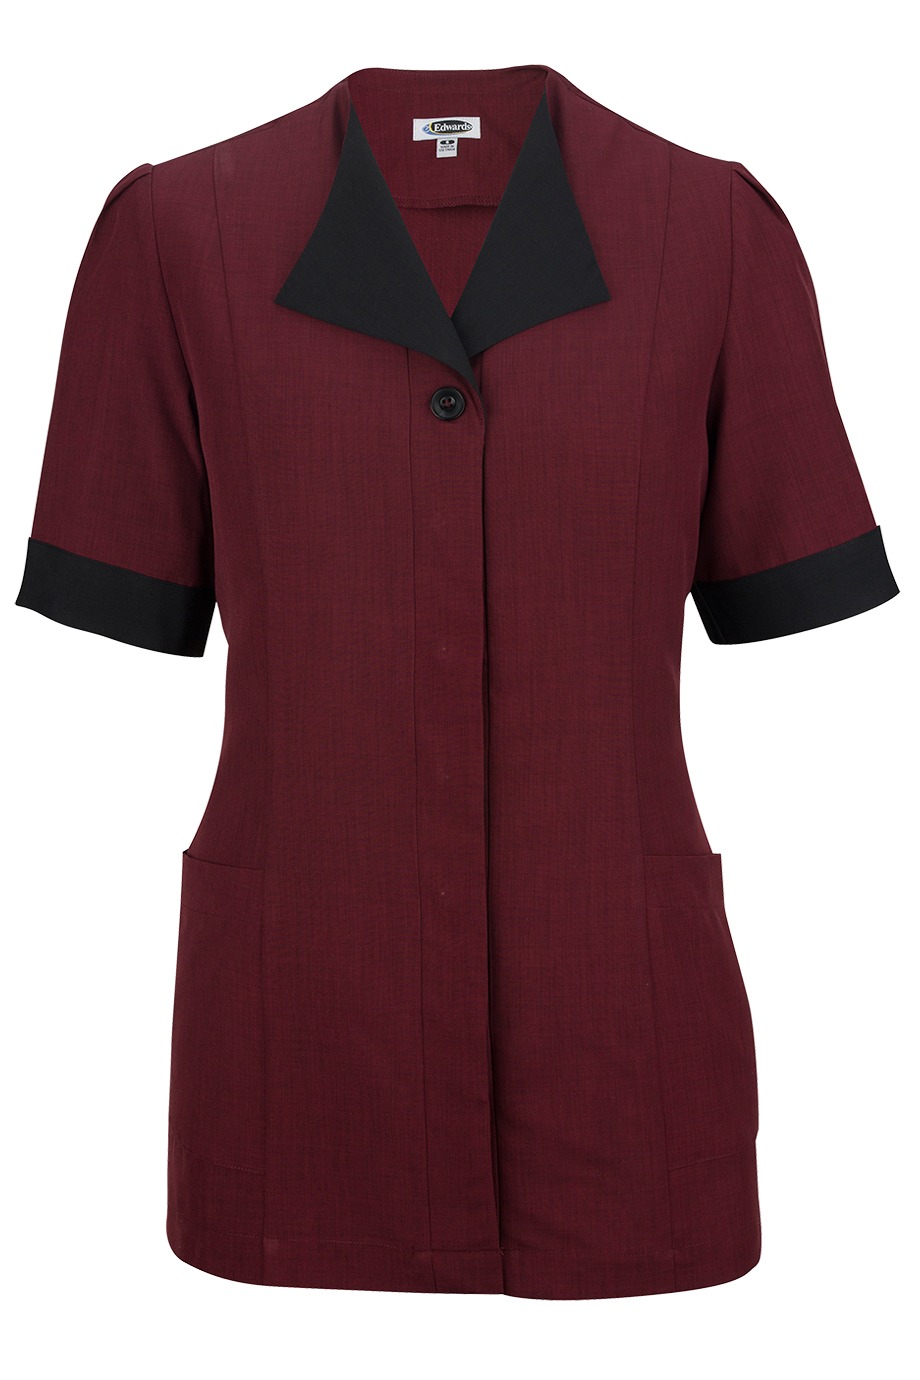 Edwards Garment 7280 - Pinnacle Housekeeping Tunic